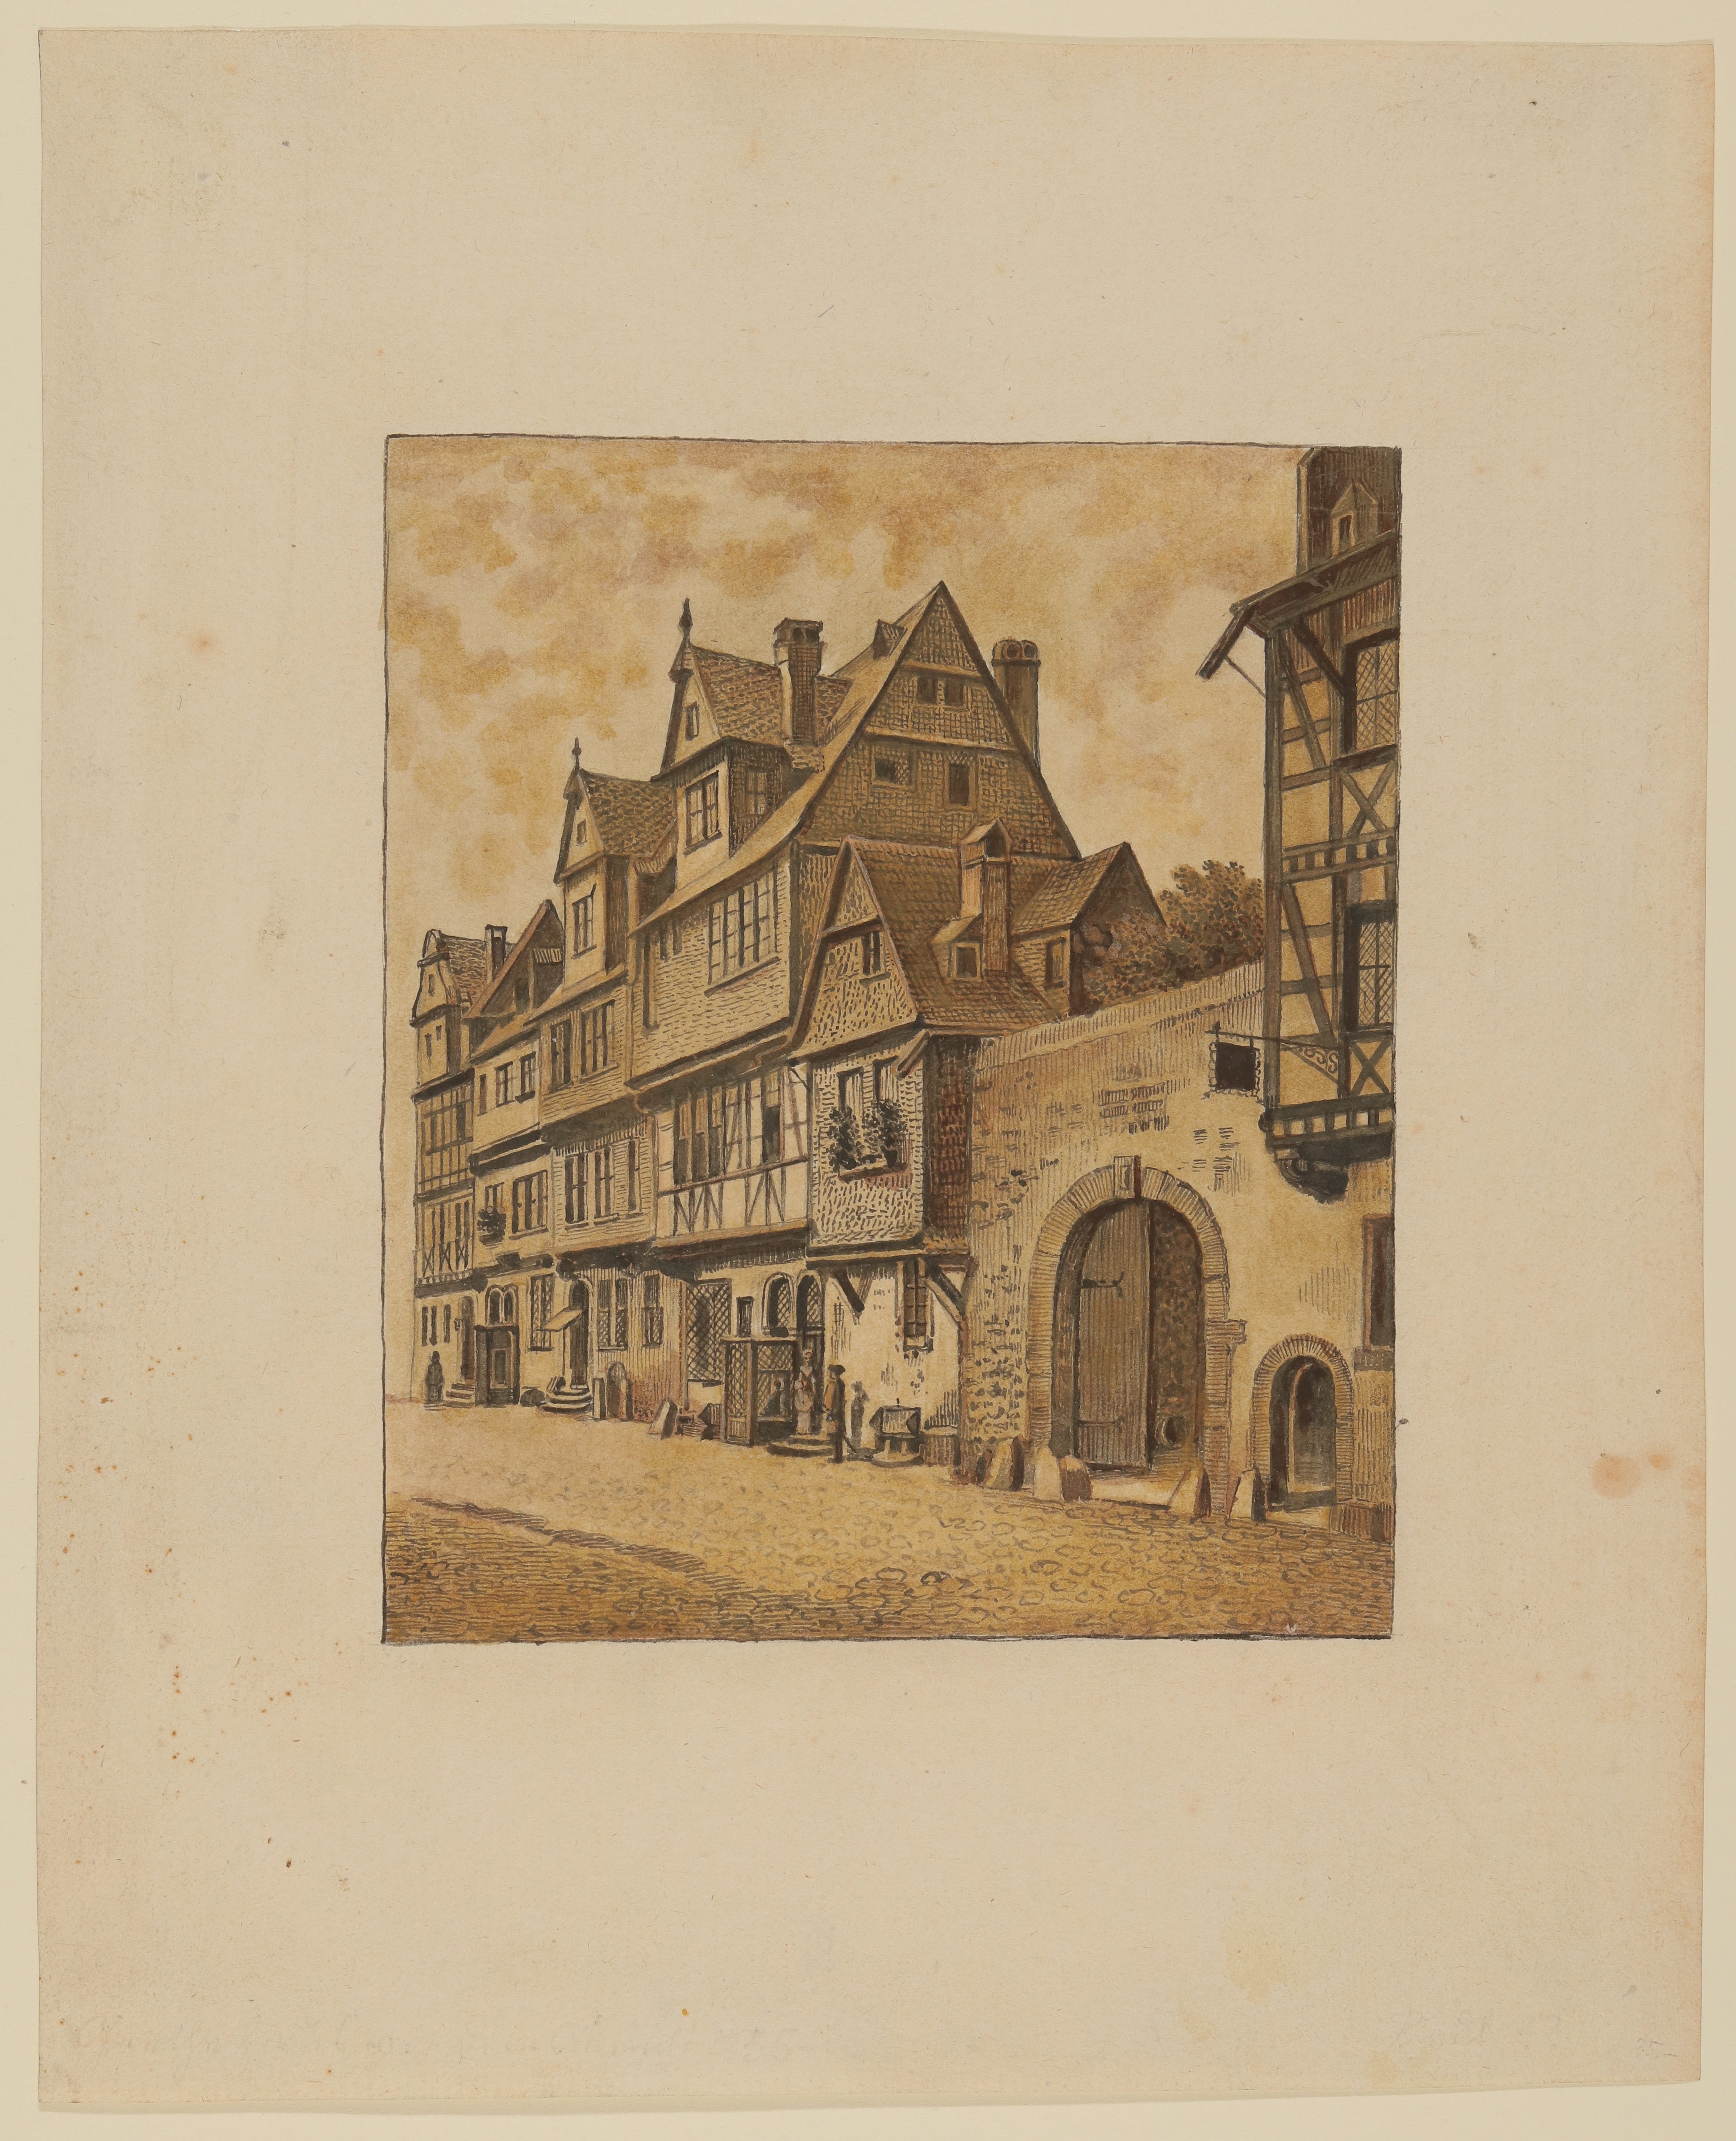 Straßenfront mit Fachwerkhäusern (Freies Deutsches Hochstift / Frankfurter Goethe-Museum Public Domain Mark)